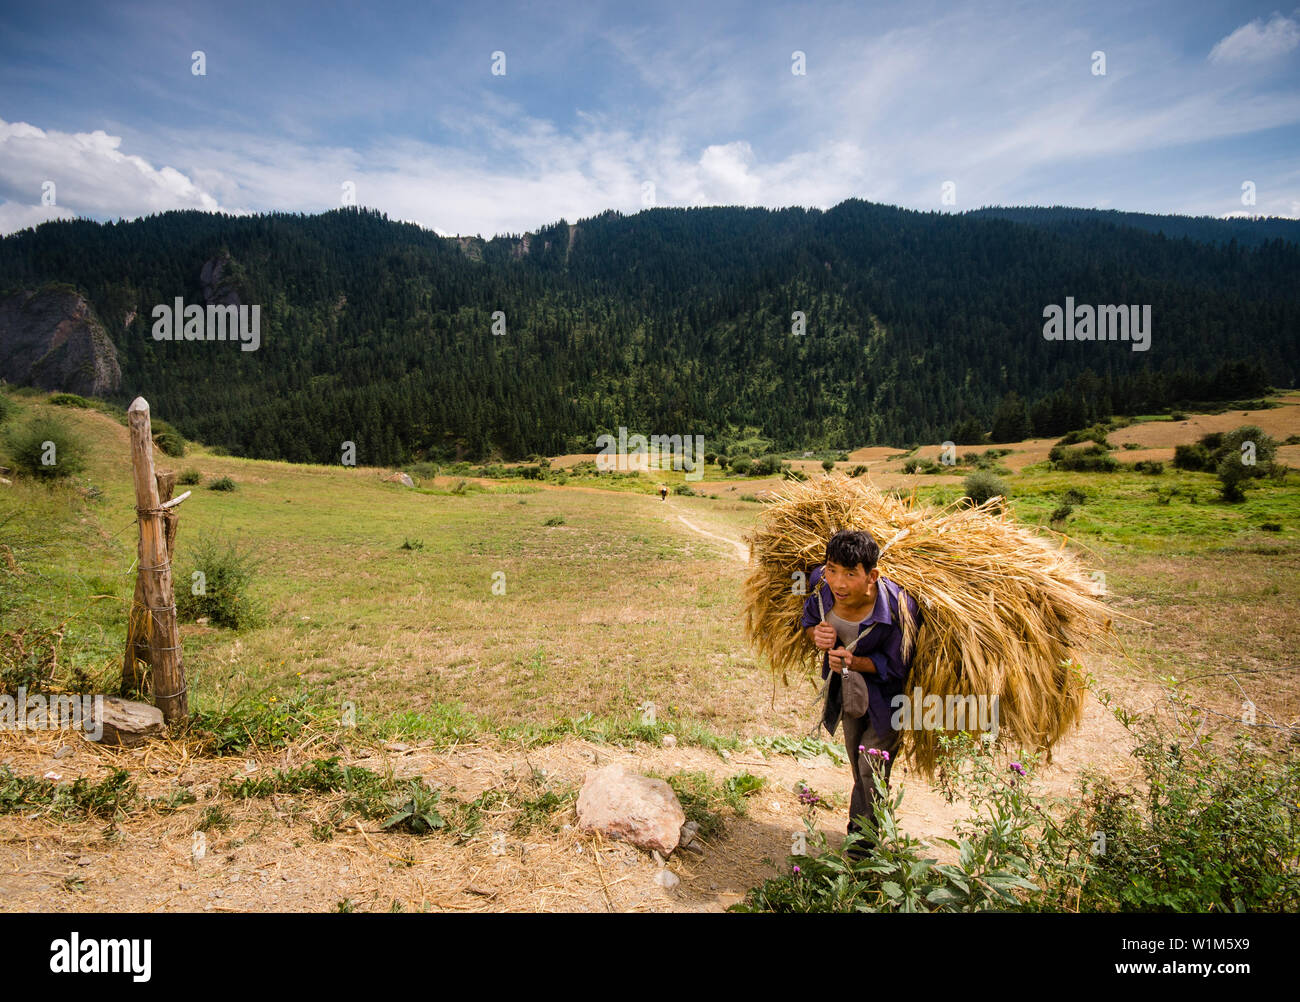 Un contadino tibetano è in cammino verso un carrello con il raccolto di orzo highland sul suo retro. Girato in Zhagana, Gannan, Cina. Poiché mancano flat polv Foto Stock